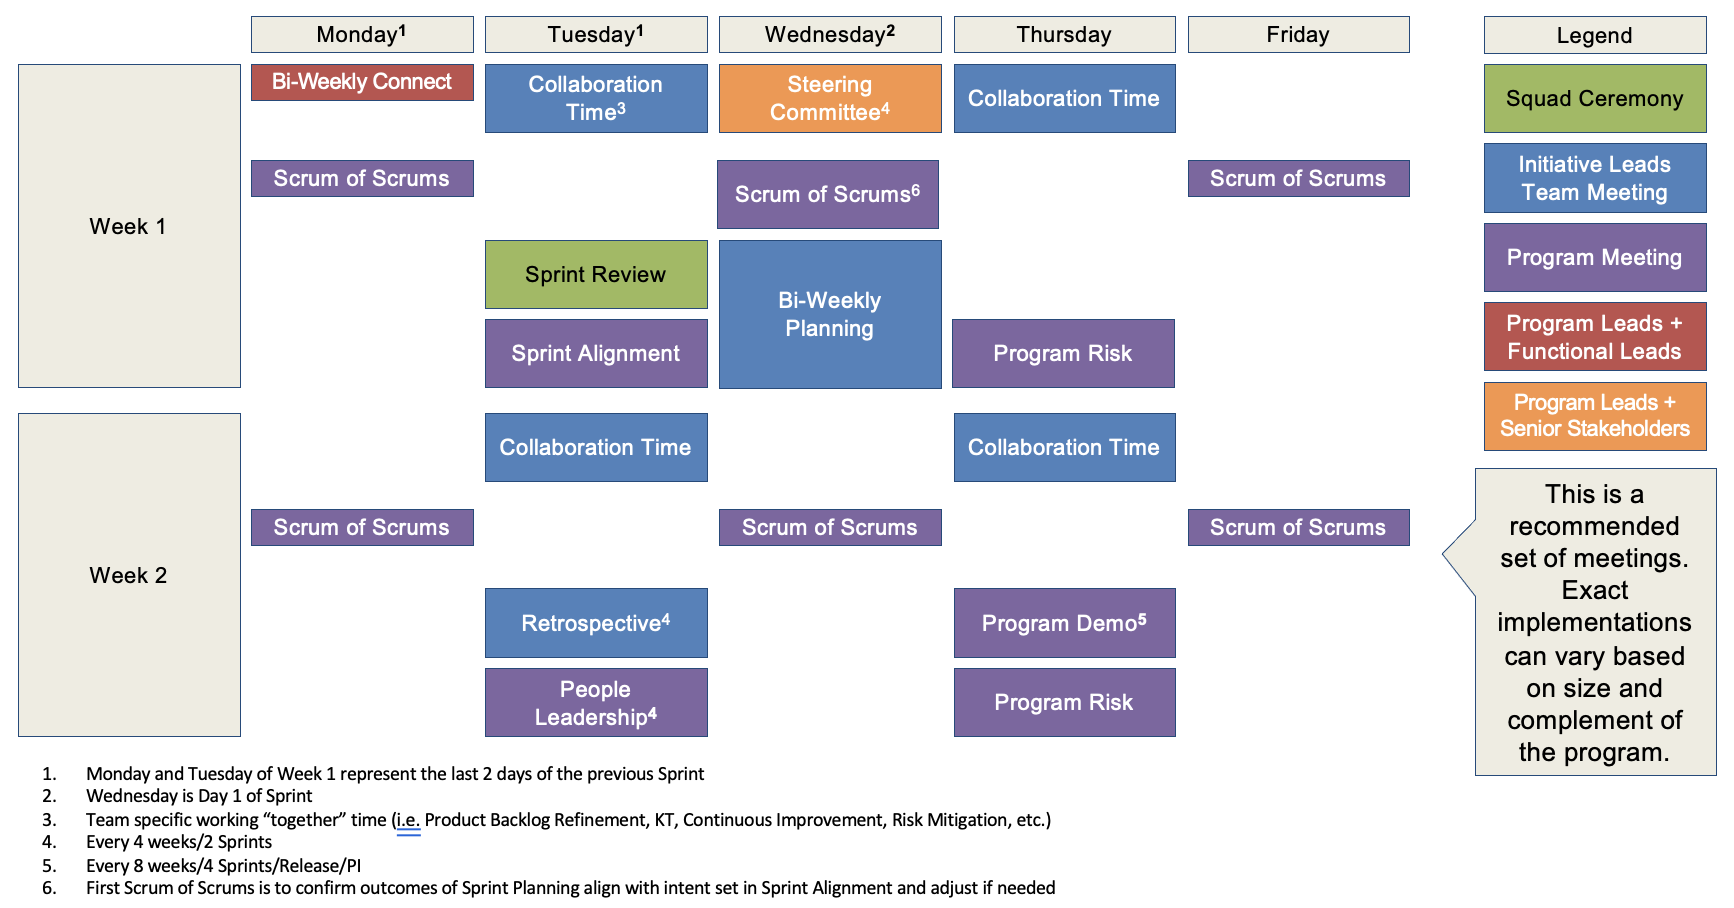 Agile Delivery Playbook - Program Leadership Meeting Schedule